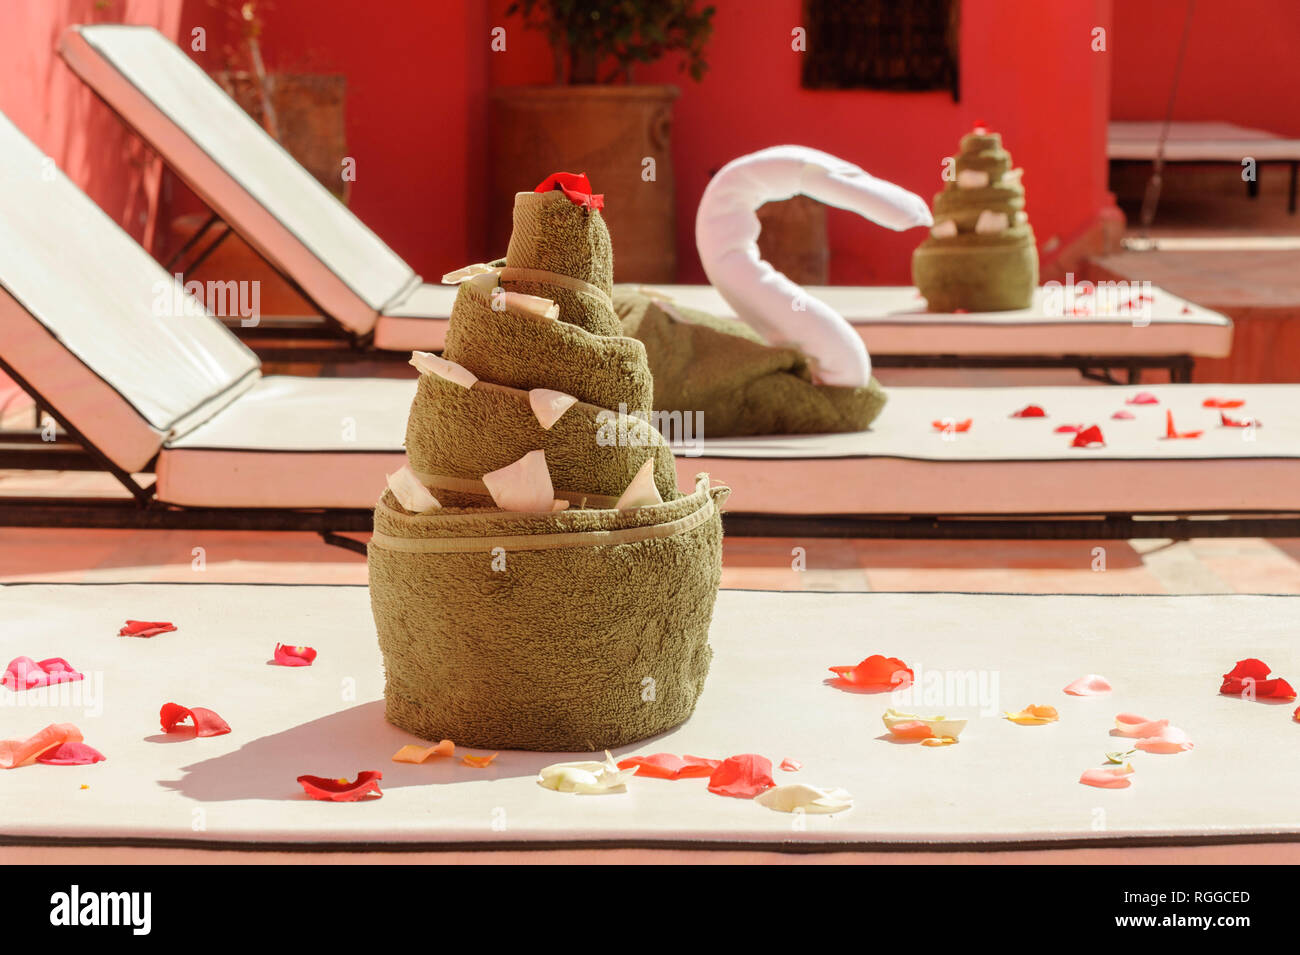 05-03-15, Marrakesch, Marokko. Das Riad Porte Royale. Dekorativ gefaltete Handtücher und Rosenblätter auf der Terrasse. Foto: © Simon Grosset Stockfoto